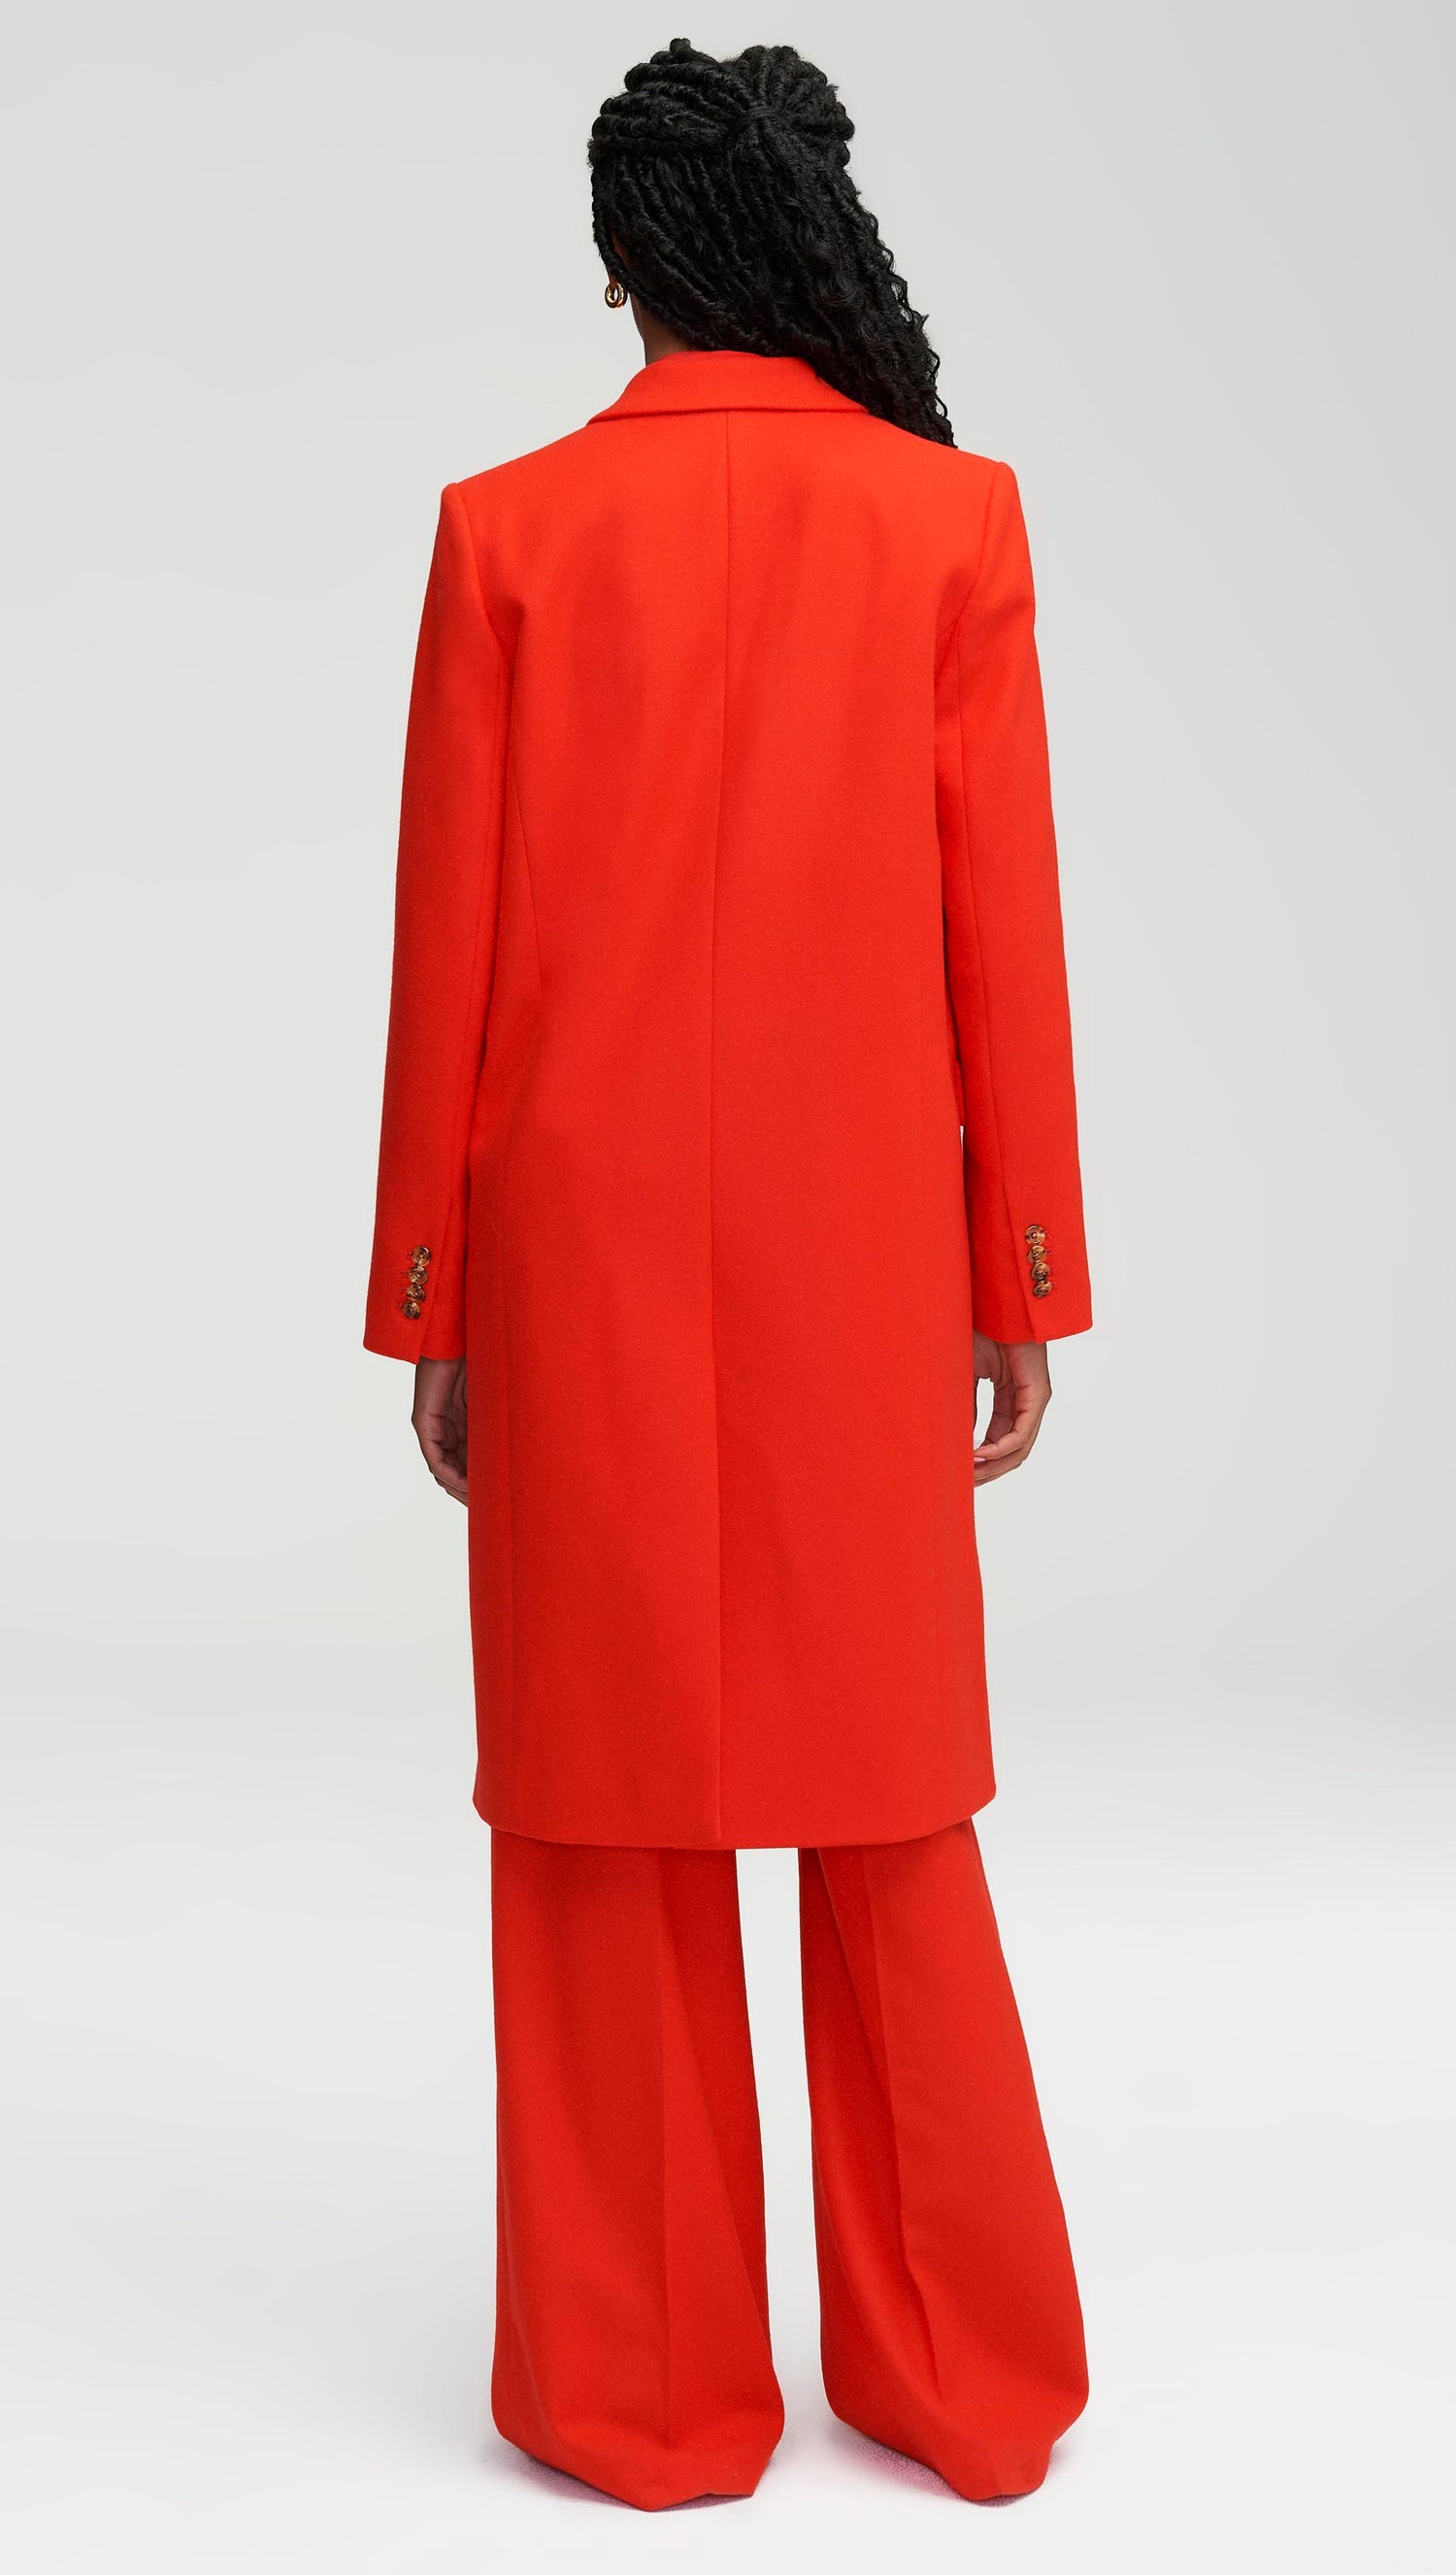 Peak Lapel Coat in Wool Twill | Women's Outerwear | Argent